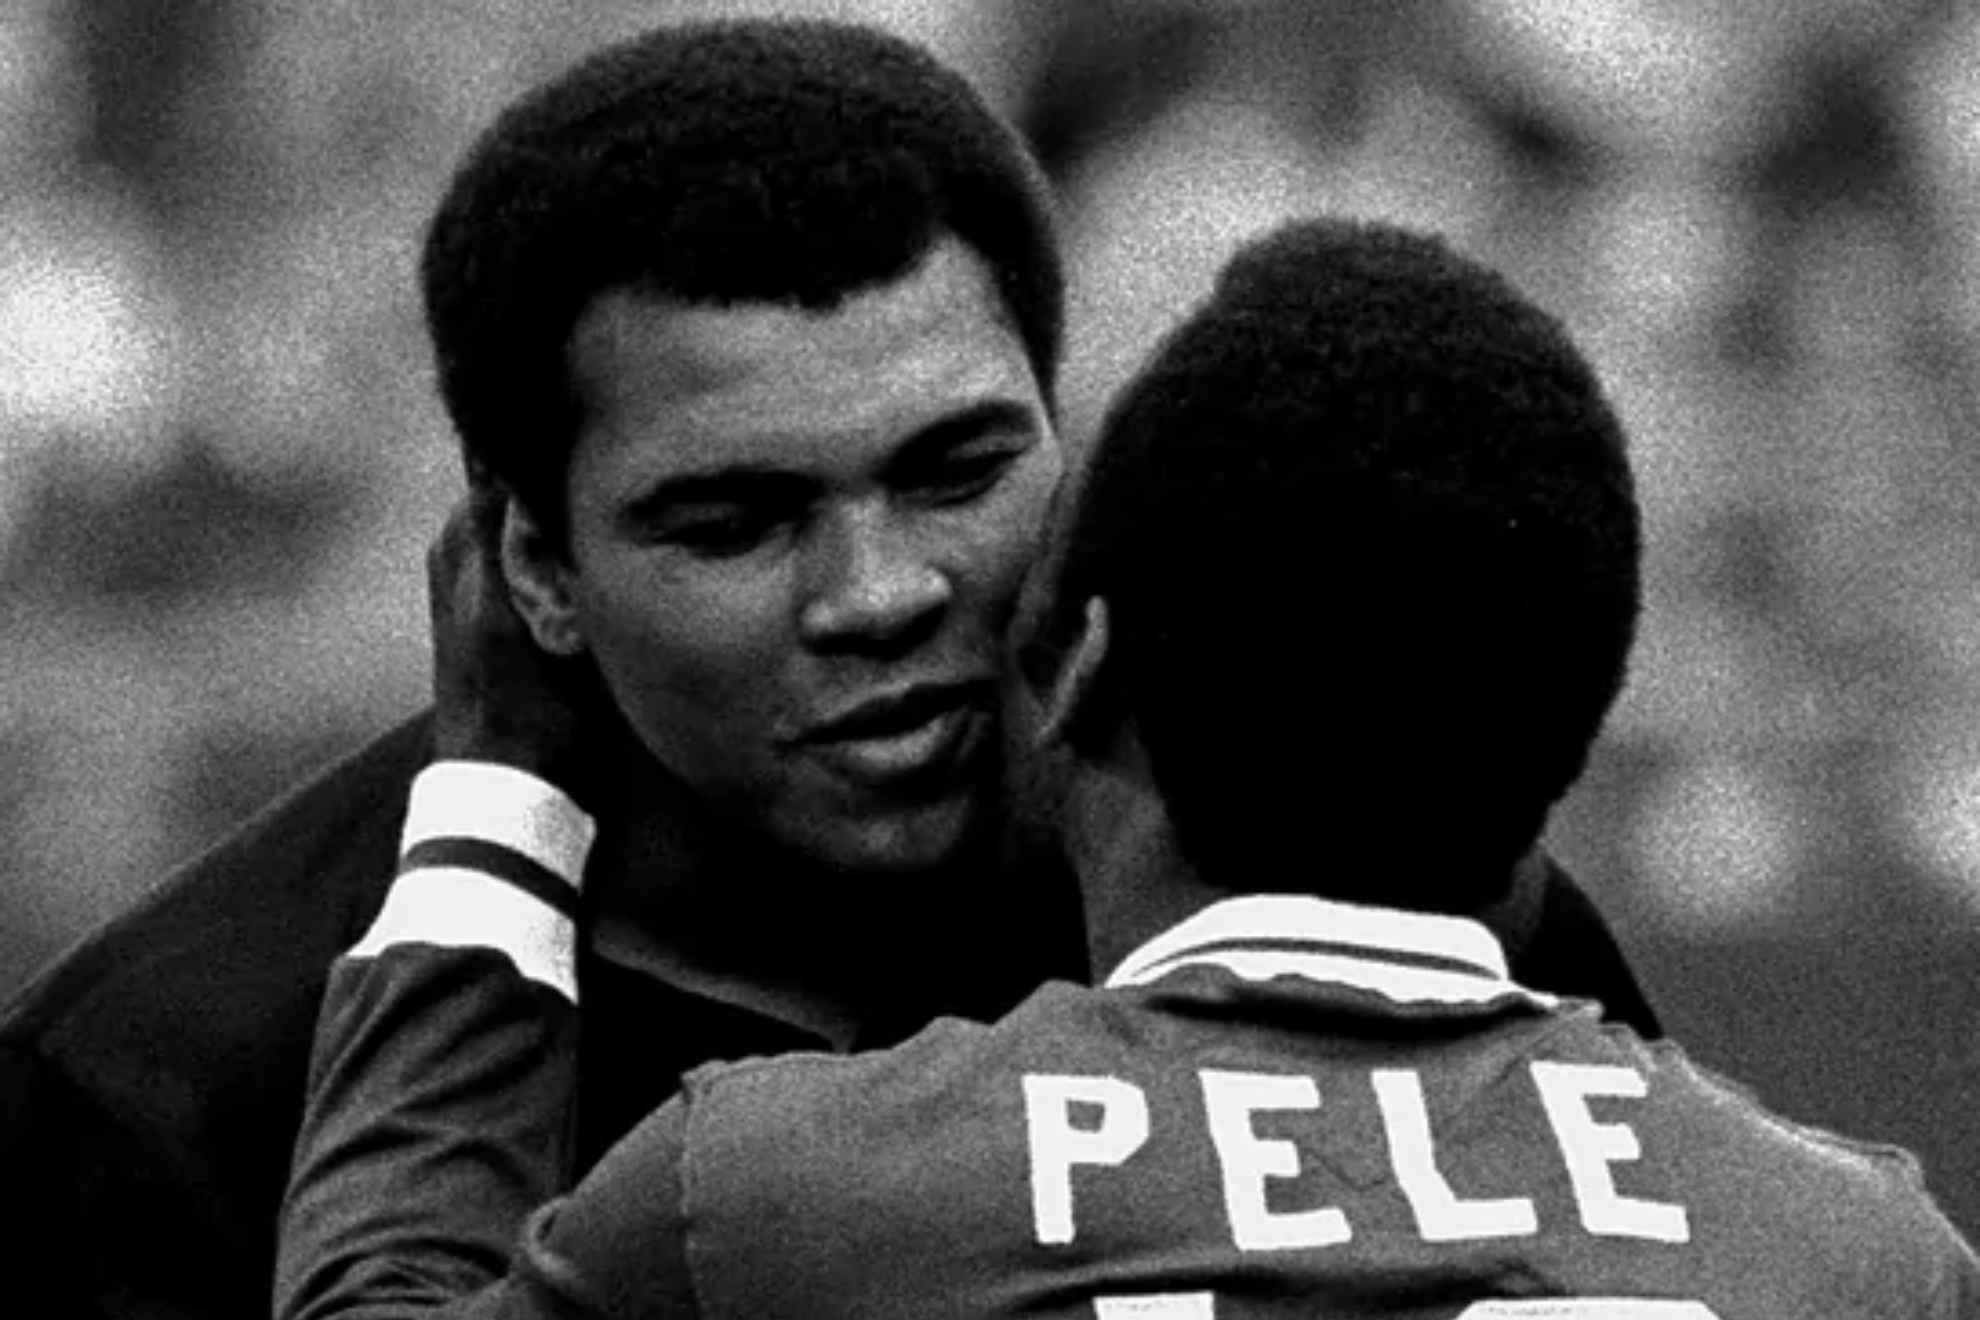 Muhammad Ali and Pele.